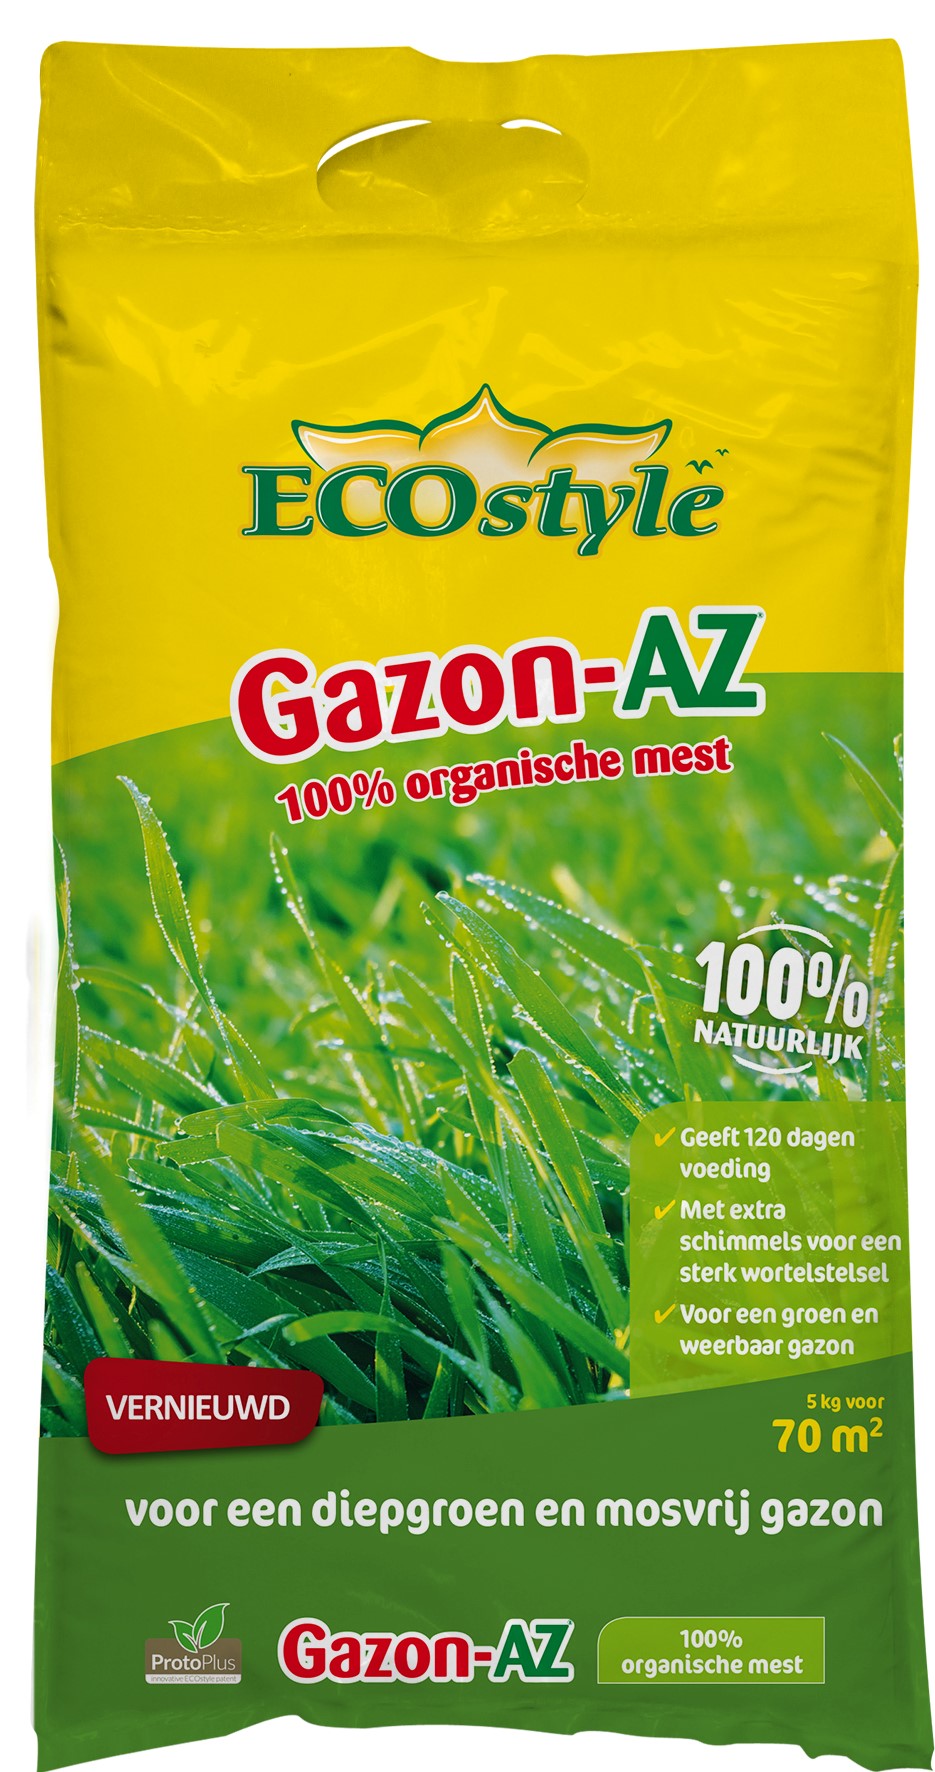 Afbeelding Ecostyle Organische Meststof Gazon-AZ 5 Kg door Haxo.nl